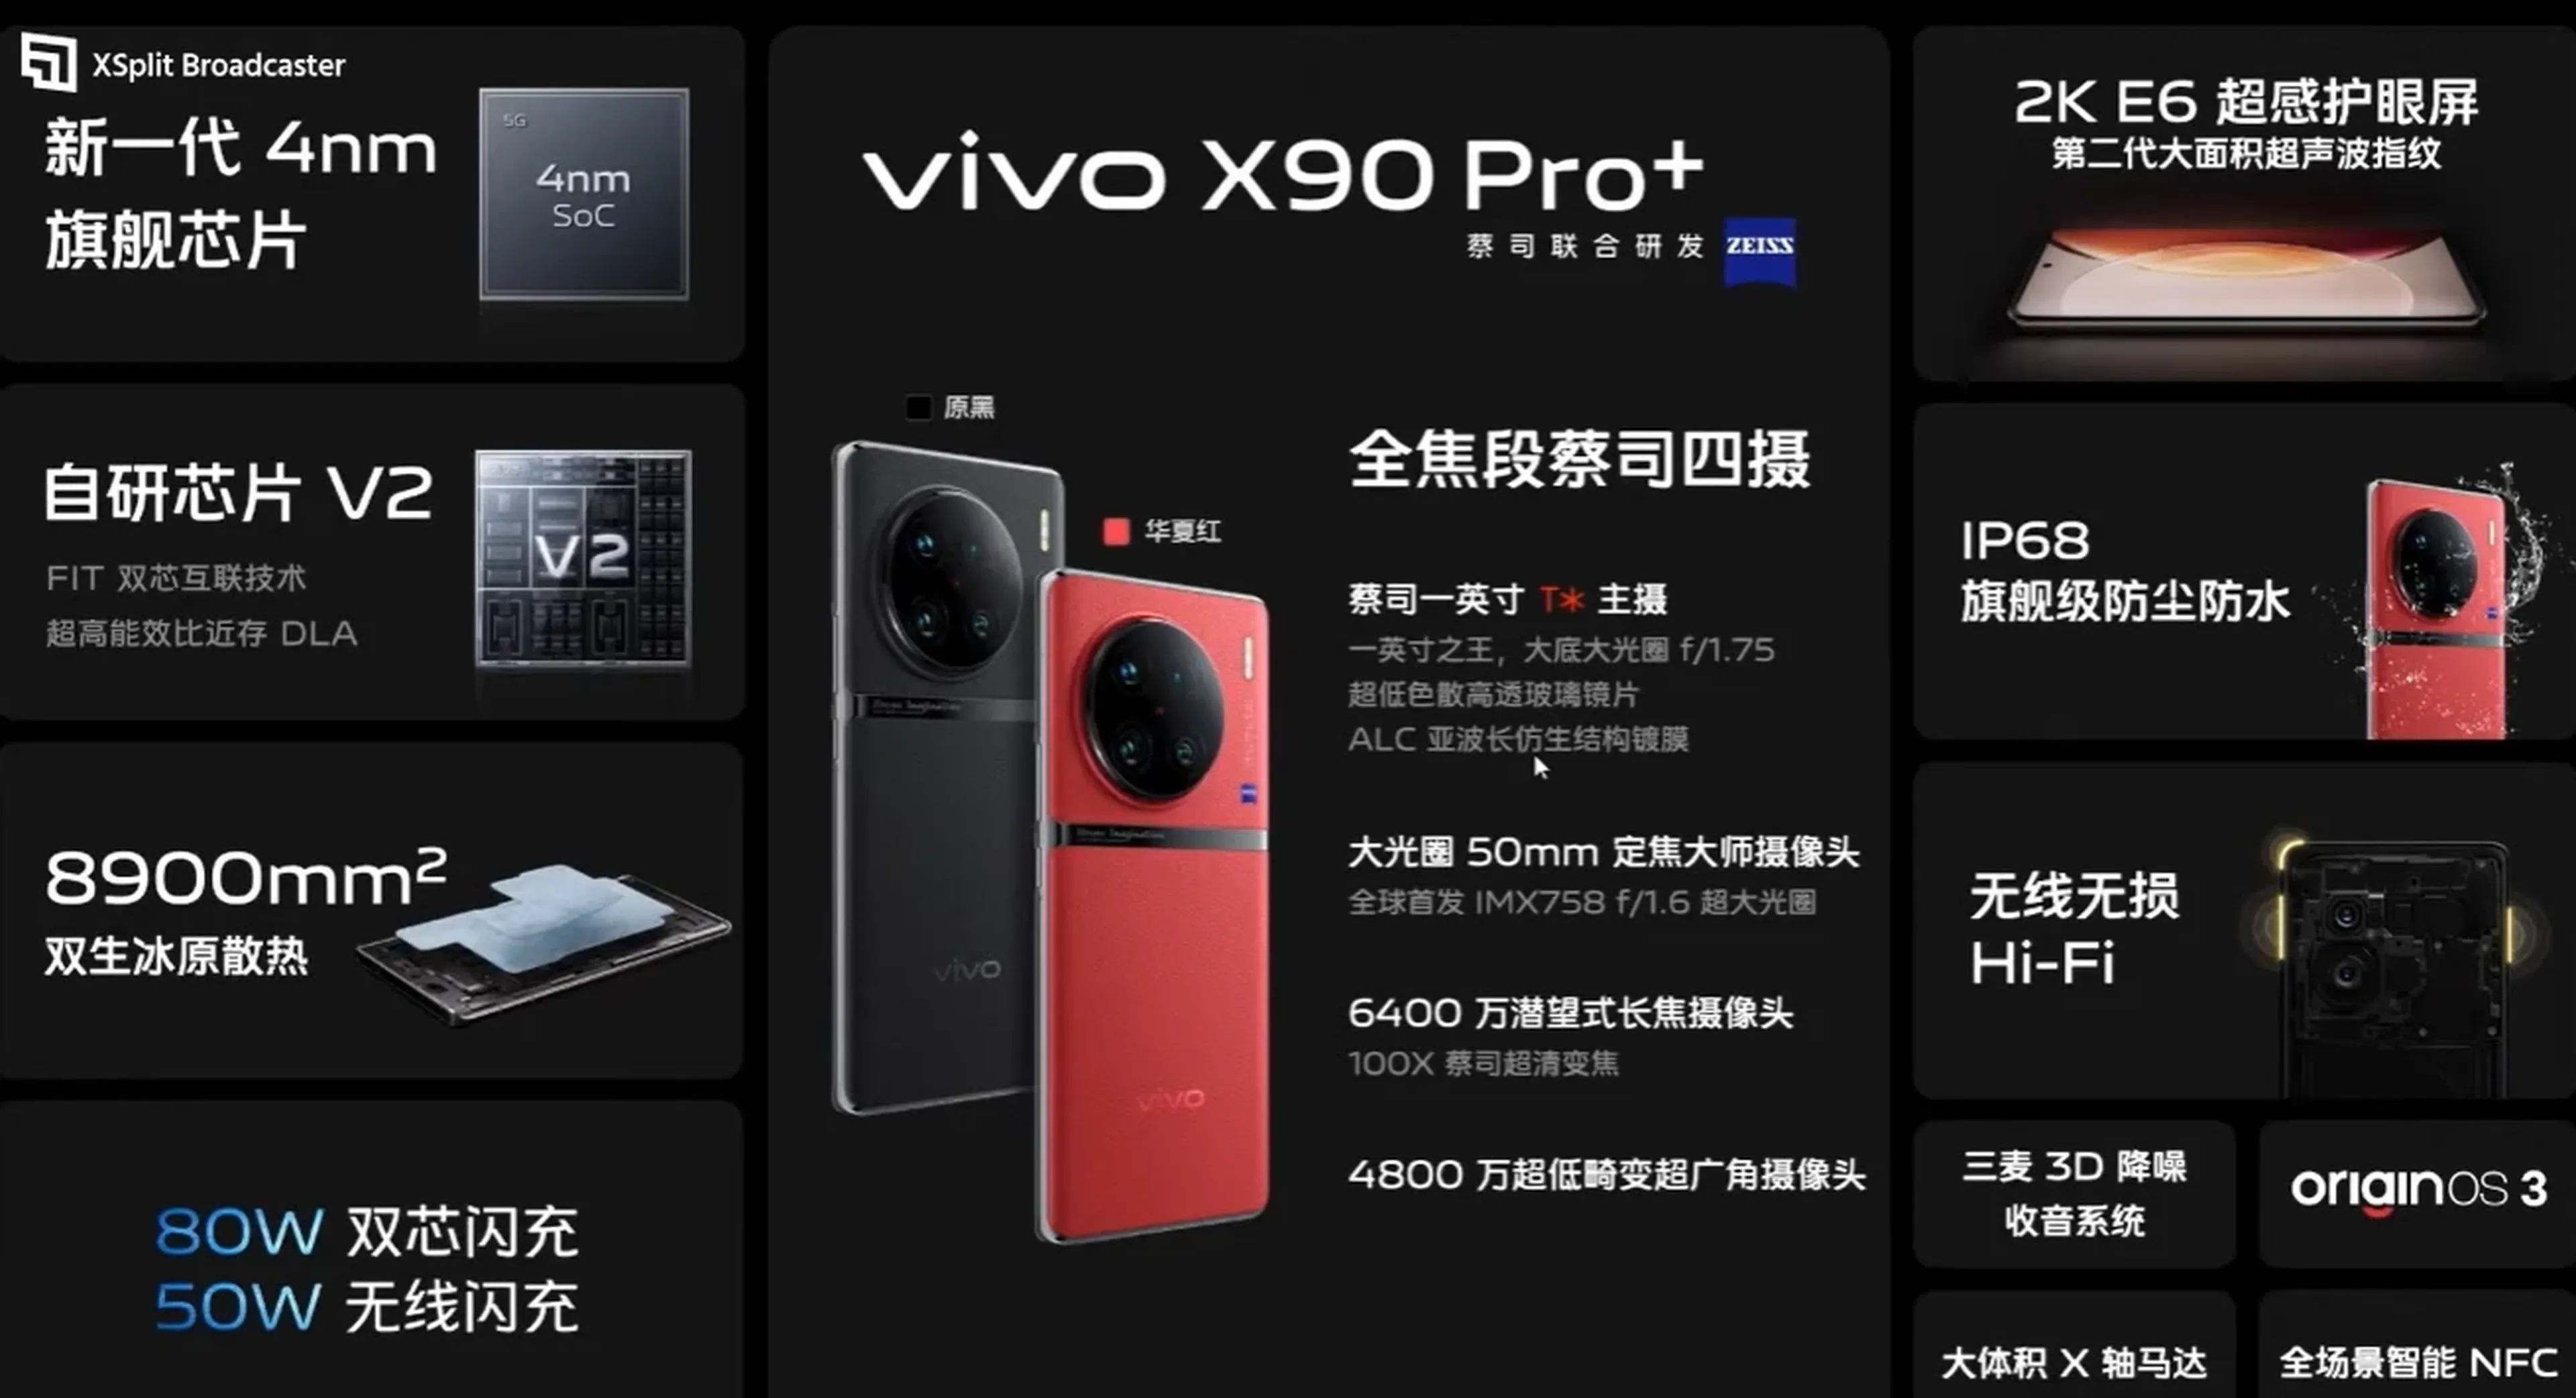 Vivo X90 Pro+ características